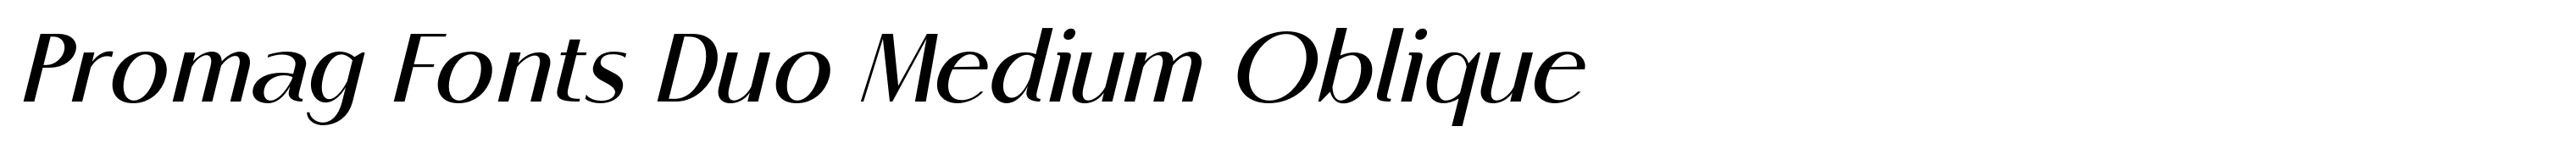 Promag Fonts Duo Medium Oblique